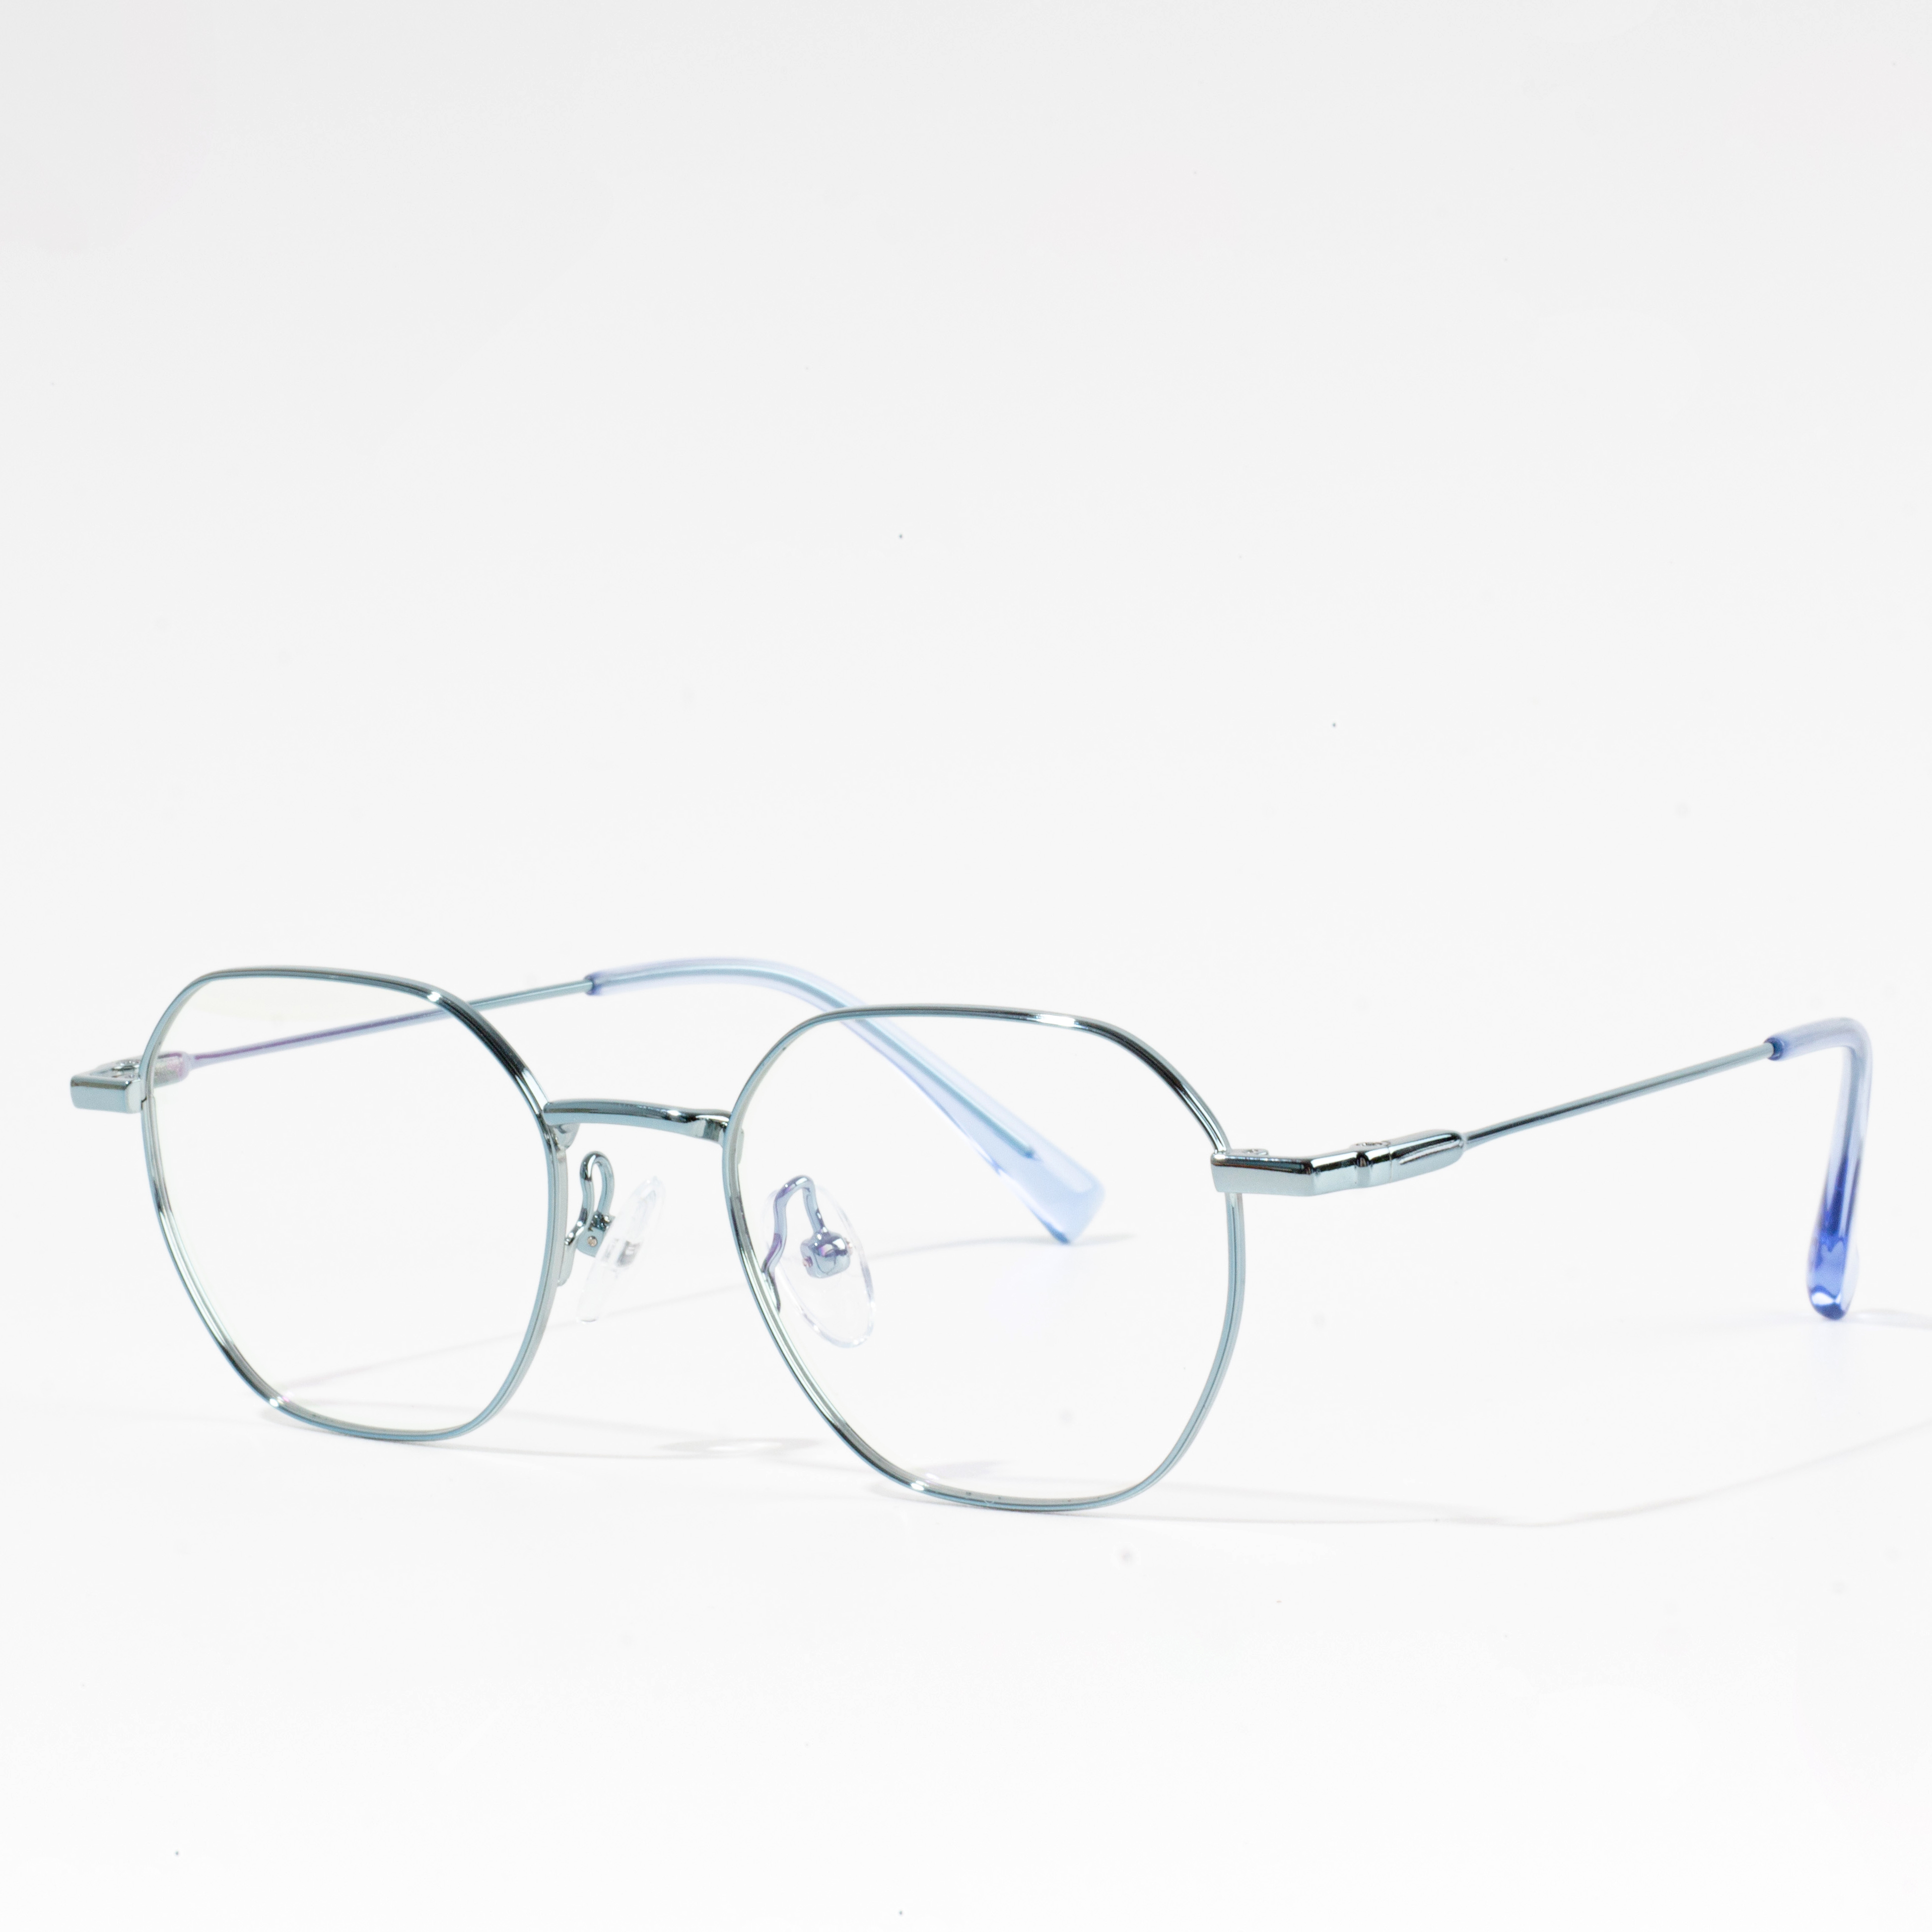 Iflexibele bril met metalen montuur